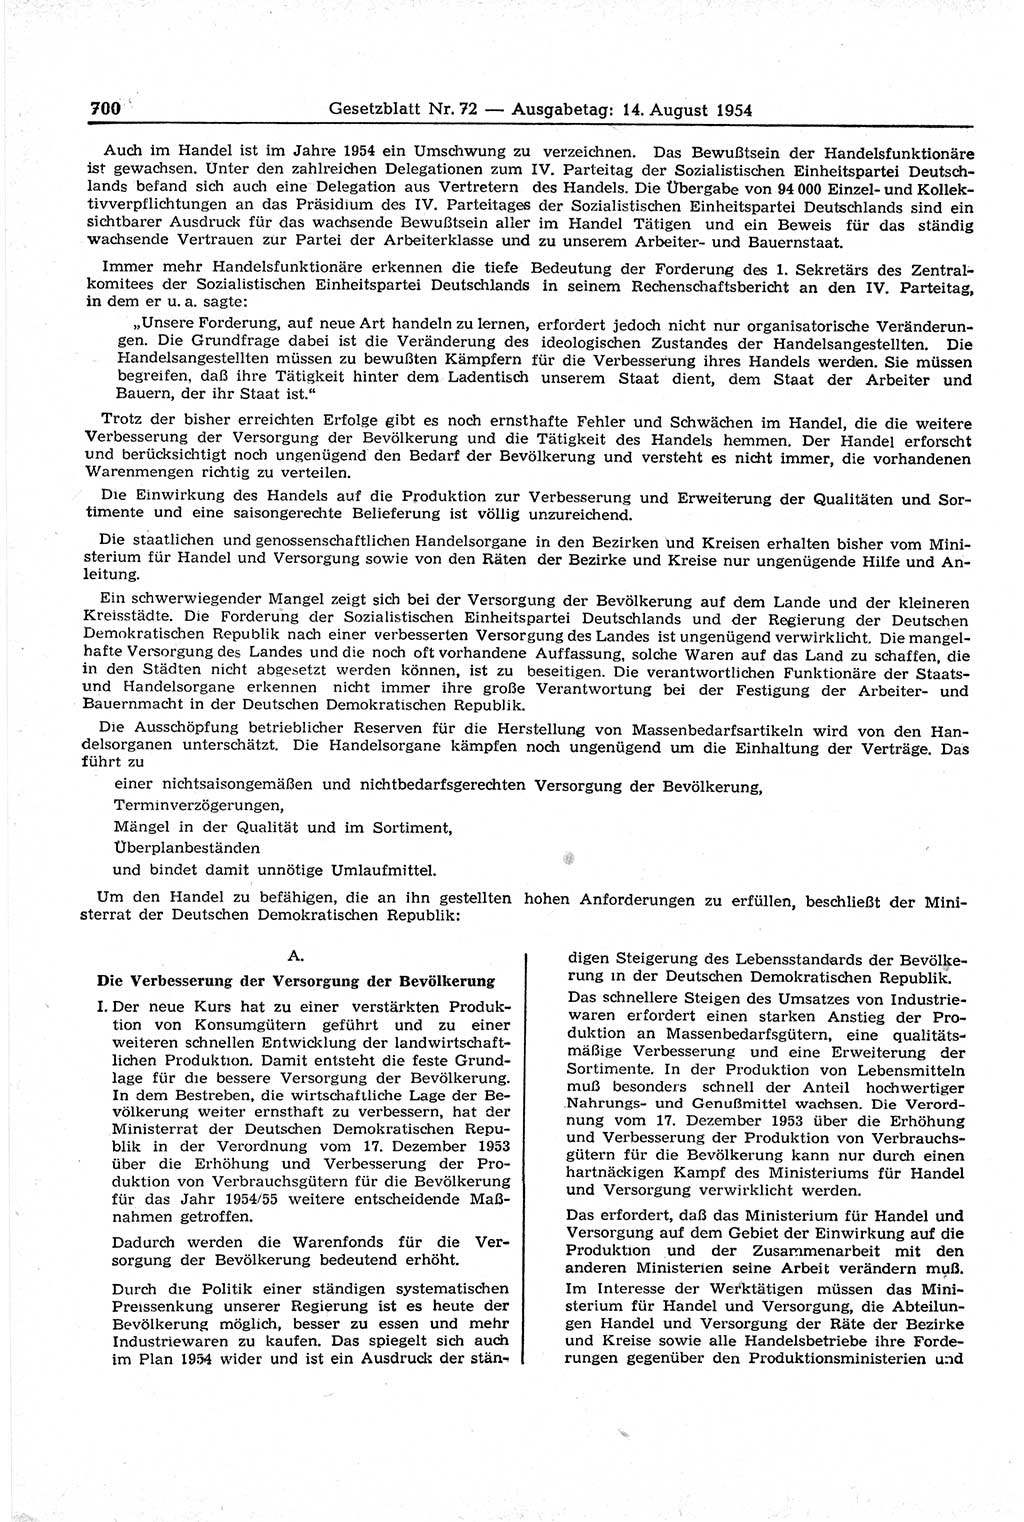 Gesetzblatt (GBl.) der Deutschen Demokratischen Republik (DDR) 1954, Seite 700 (GBl. DDR 1954, S. 700)